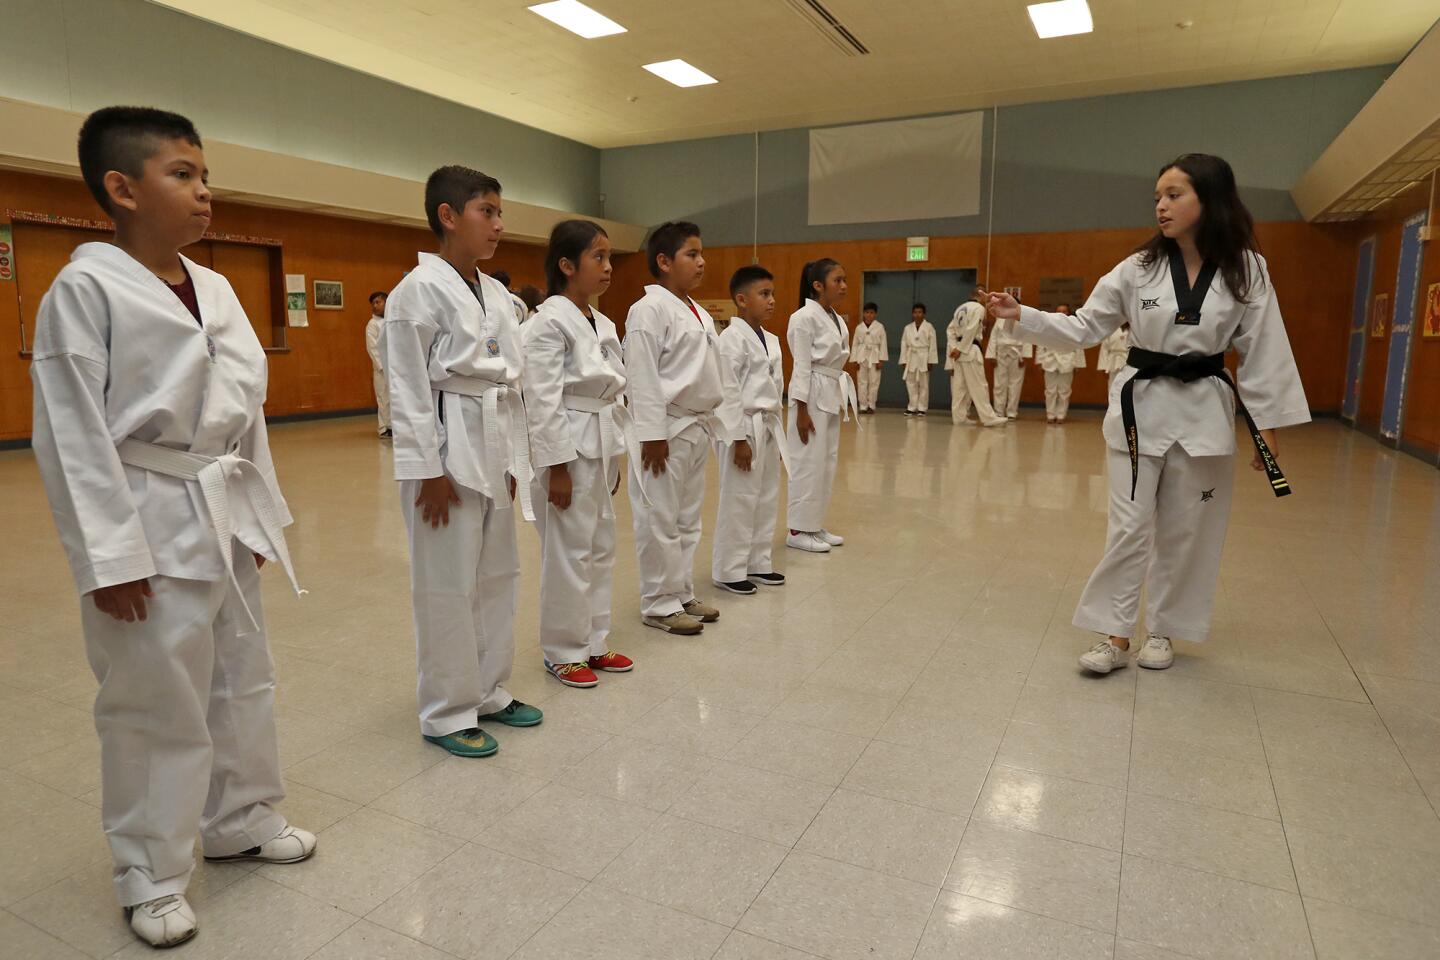 New taekwondo summer camp kicks its way into Costa Mesa